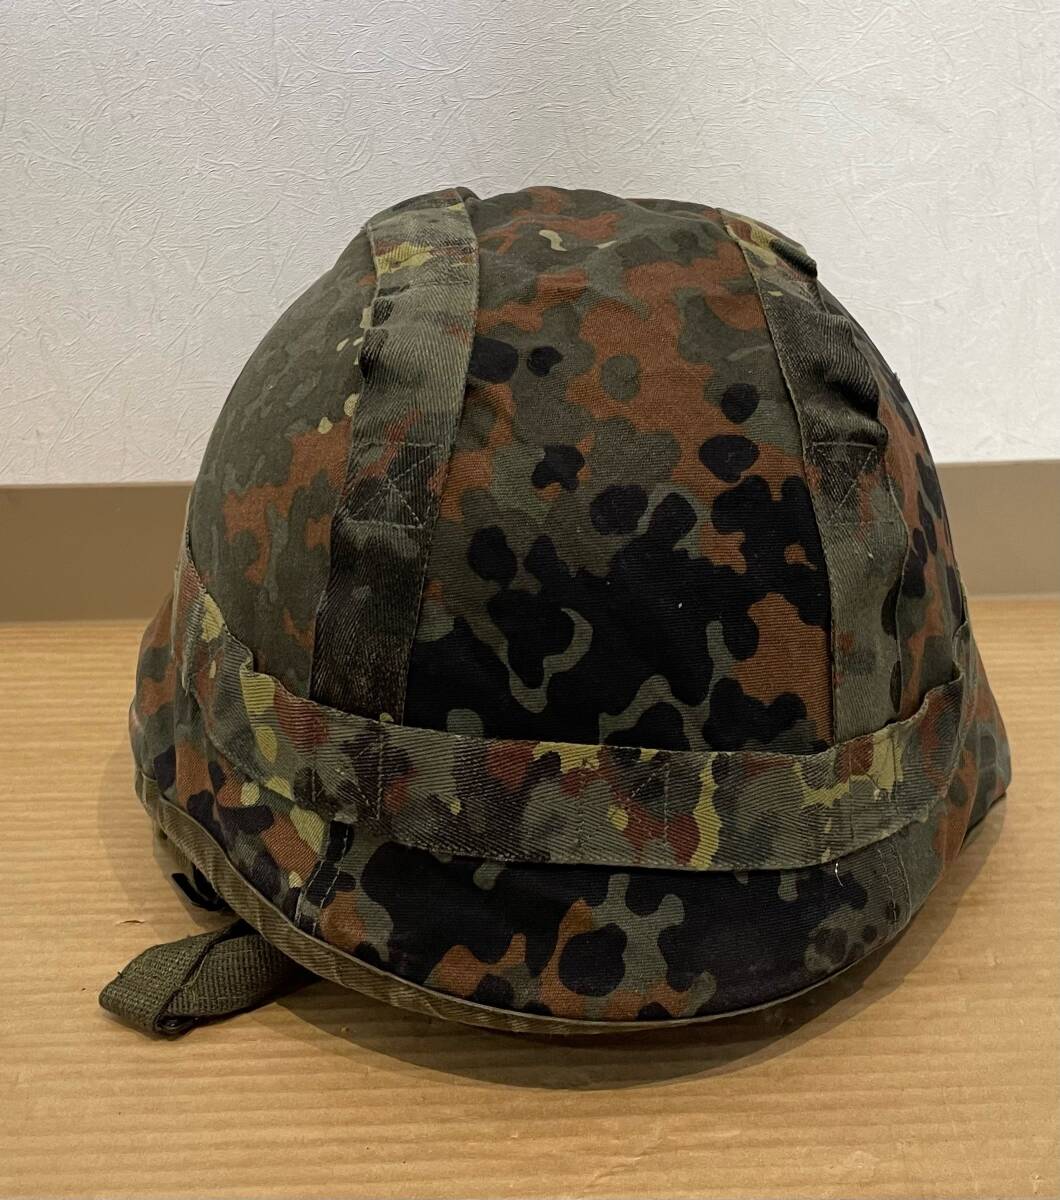  дешевый!! 99 иен старт!! Германия армия запад Германия армия M826ke pra шлем шлем frekta- покрытие камуфляж запад Германия армия для защитные очки есть 